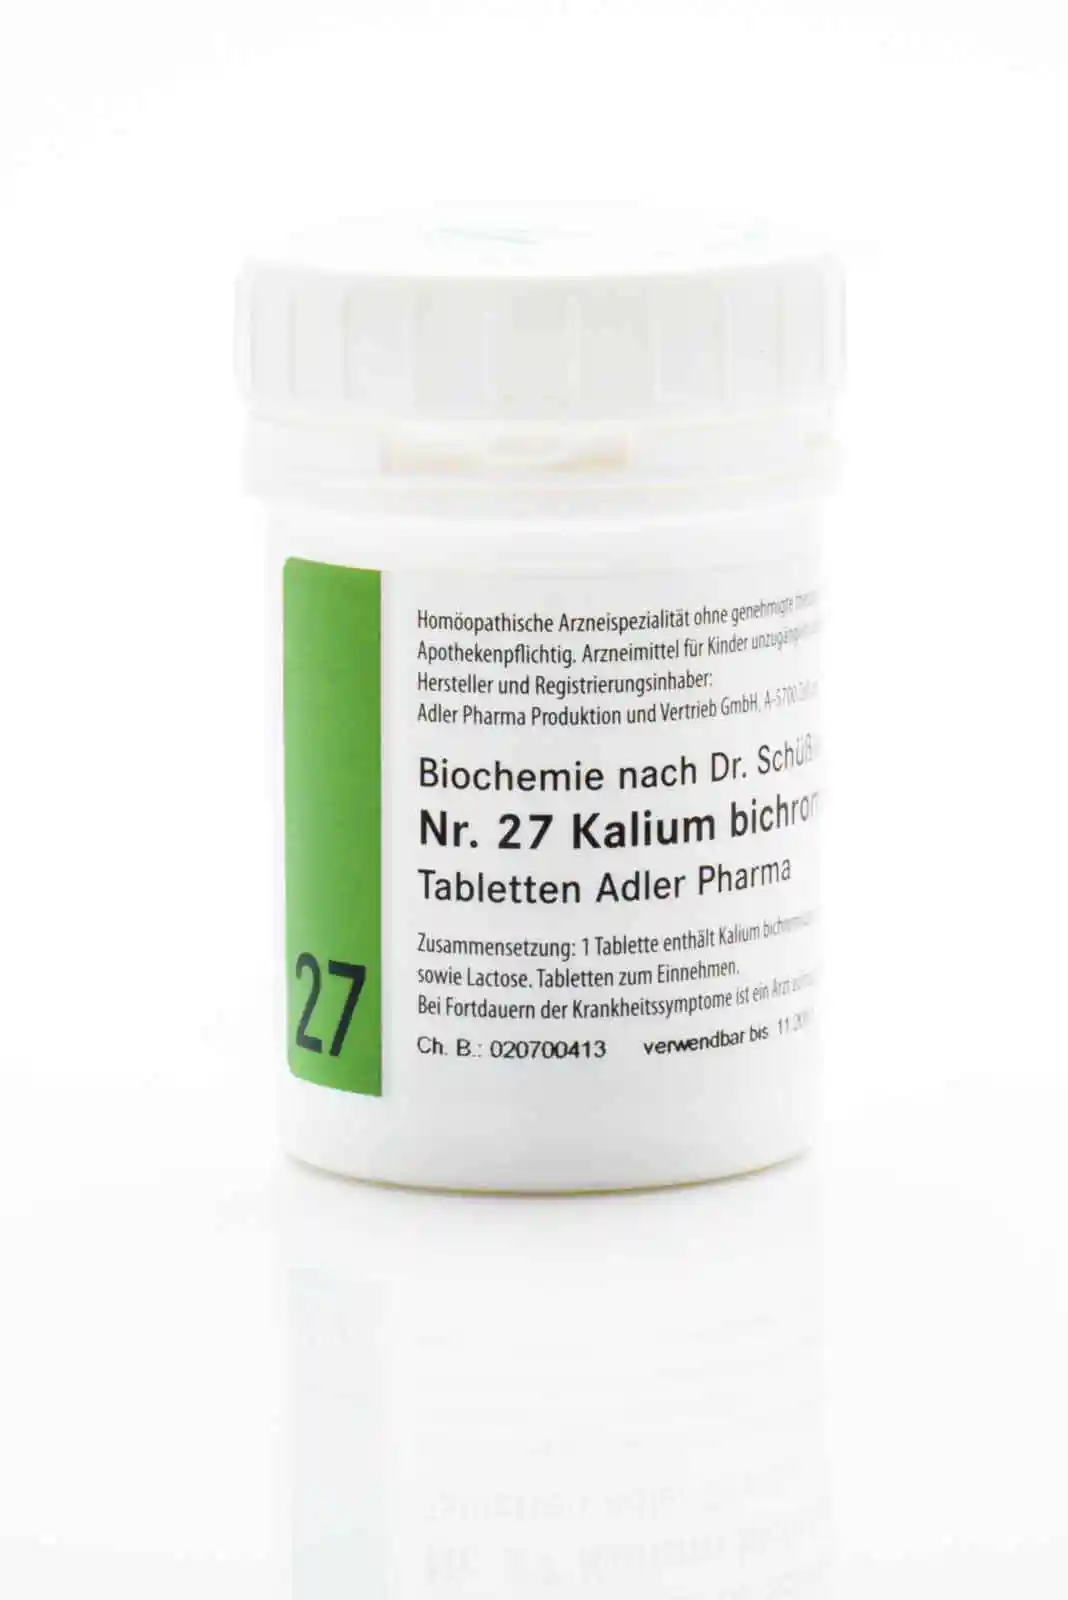 Nr. 27 Kalium bichromicum D12